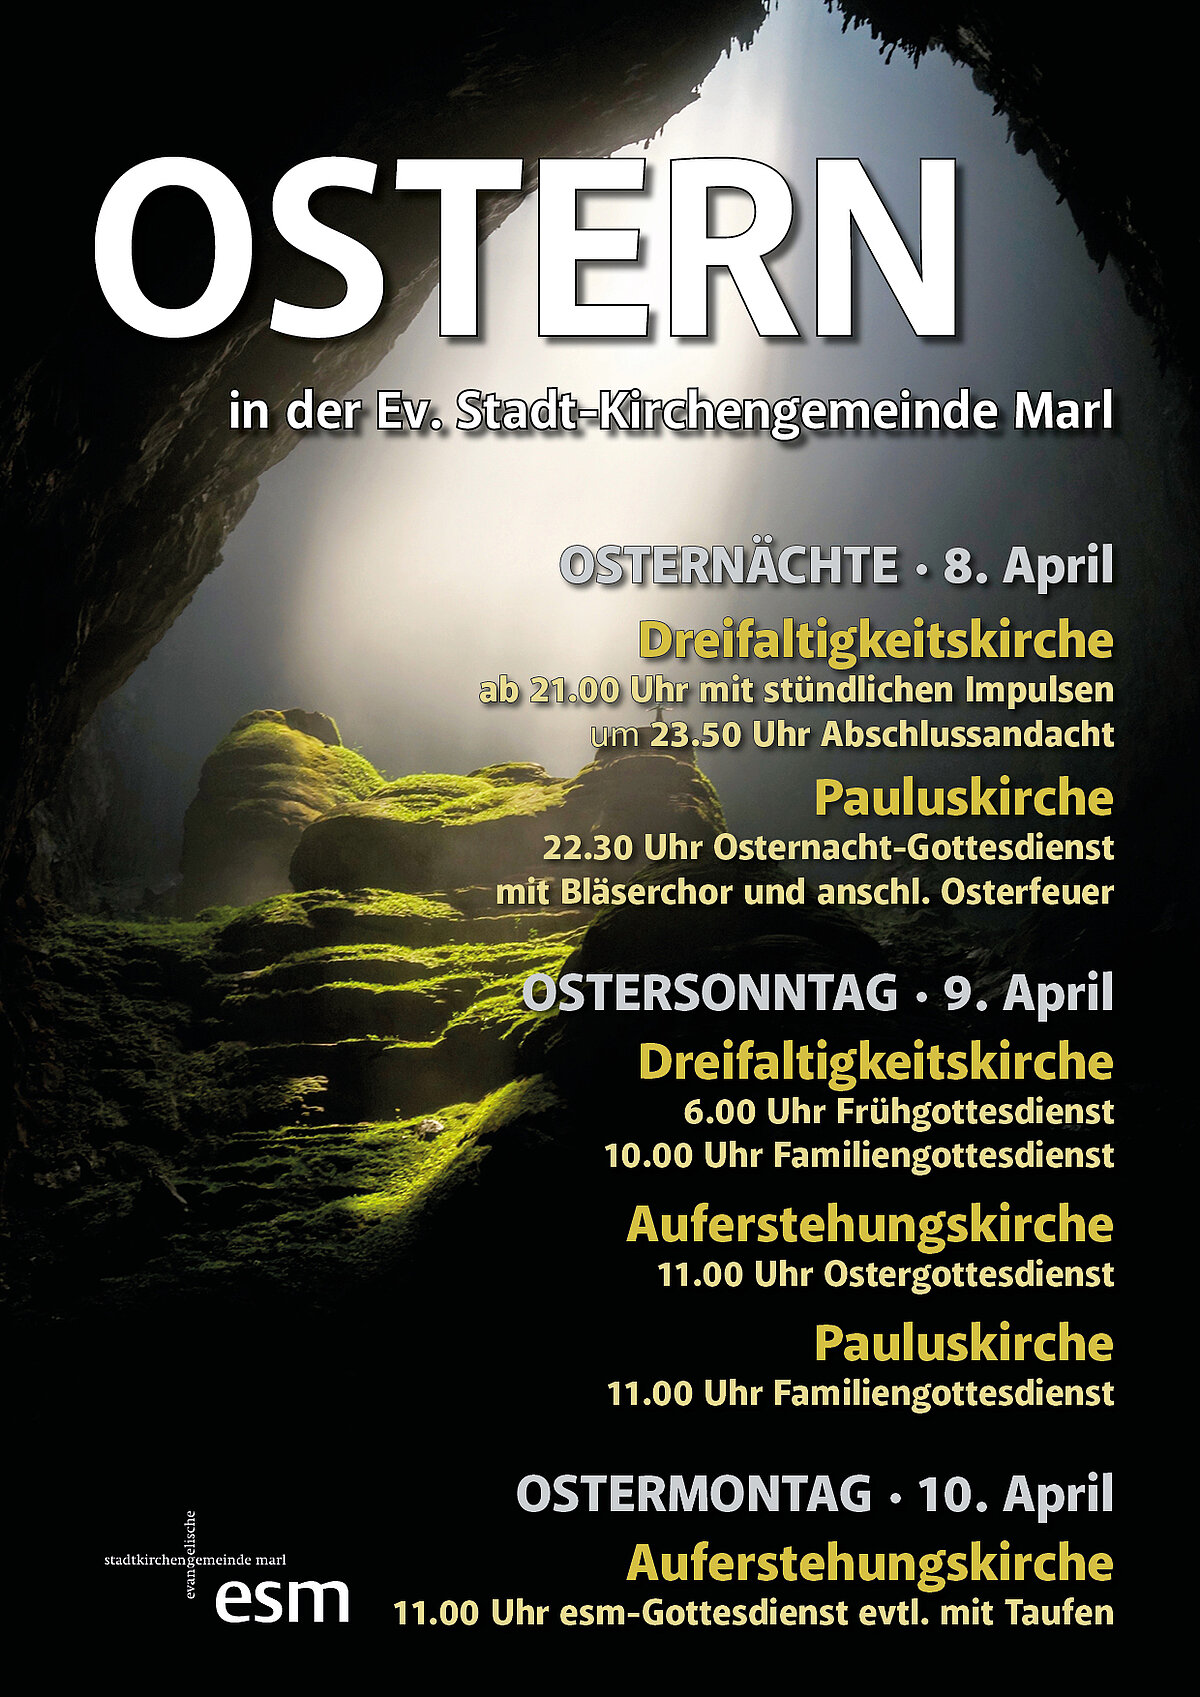 Alle Gottesdienste von Ostersamstag bis Ostermontag - siehe Text unten